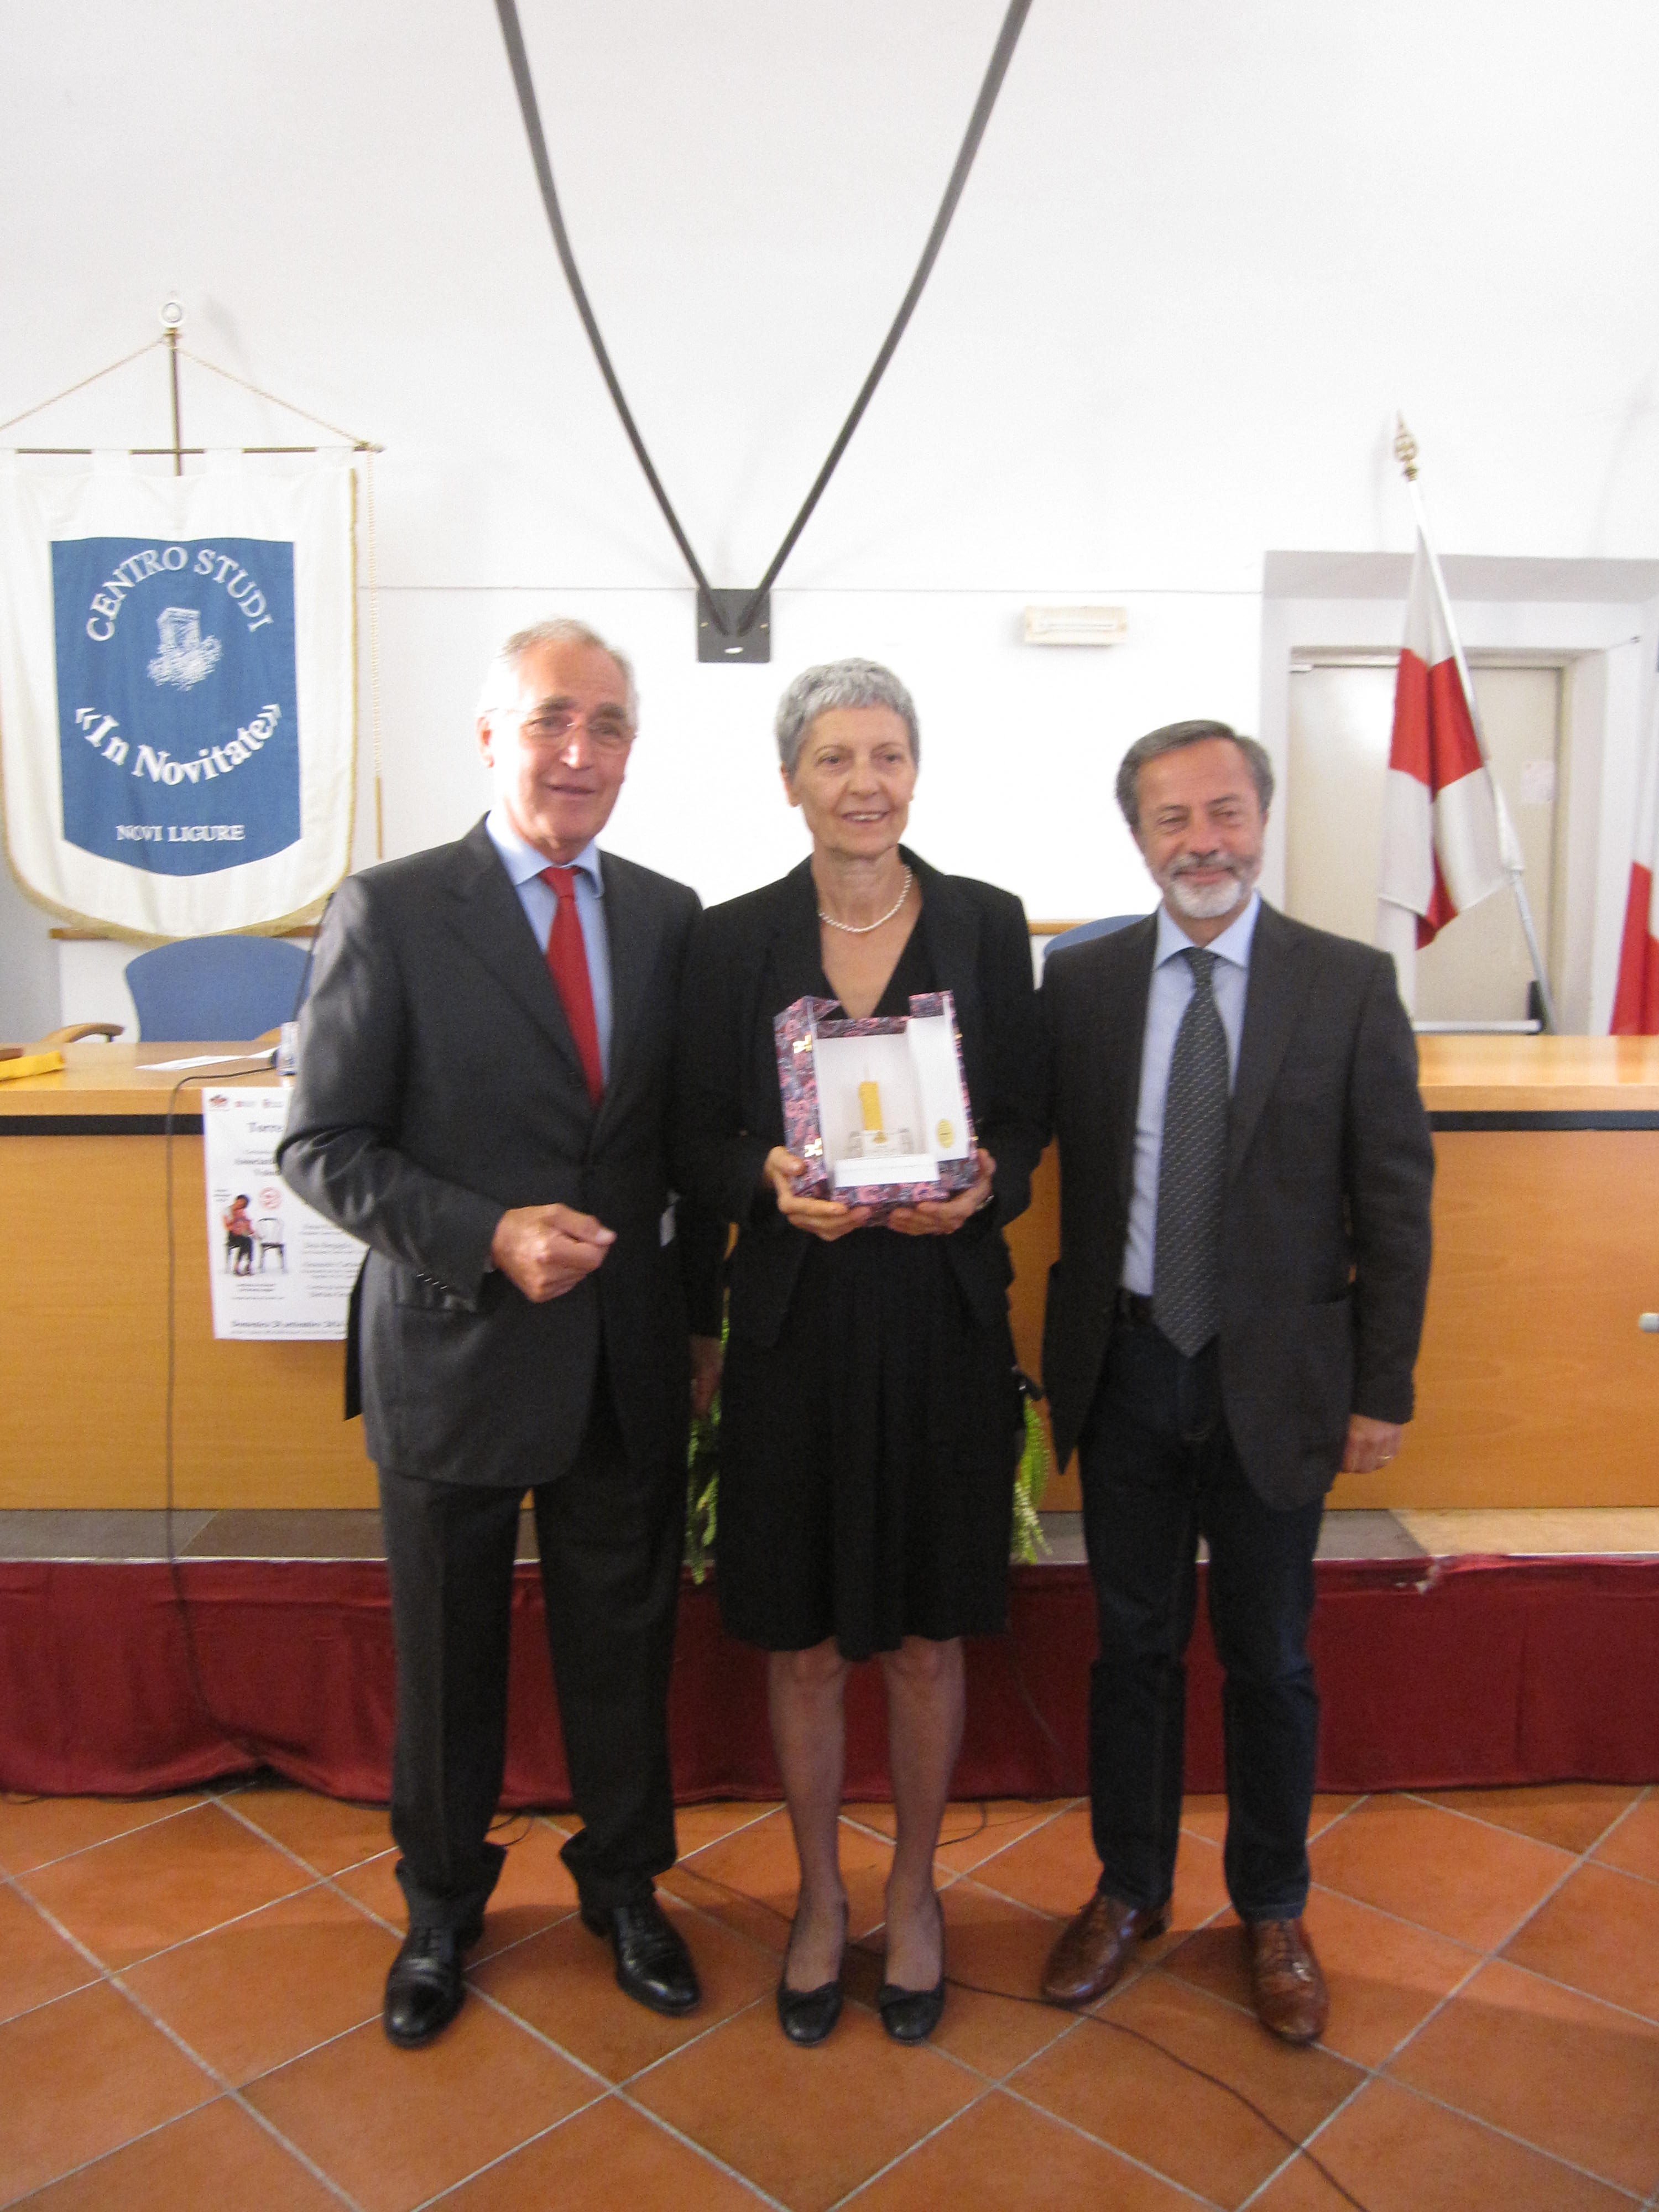   (Nella foto partendo  da sinistra il presidente del C.S. Renzo Piccinini, la presidente dei donatori Volontari del Sangue Maria Rosa Ballestrero e il Sindaco di Novi Ligure Rocchino Muliere)